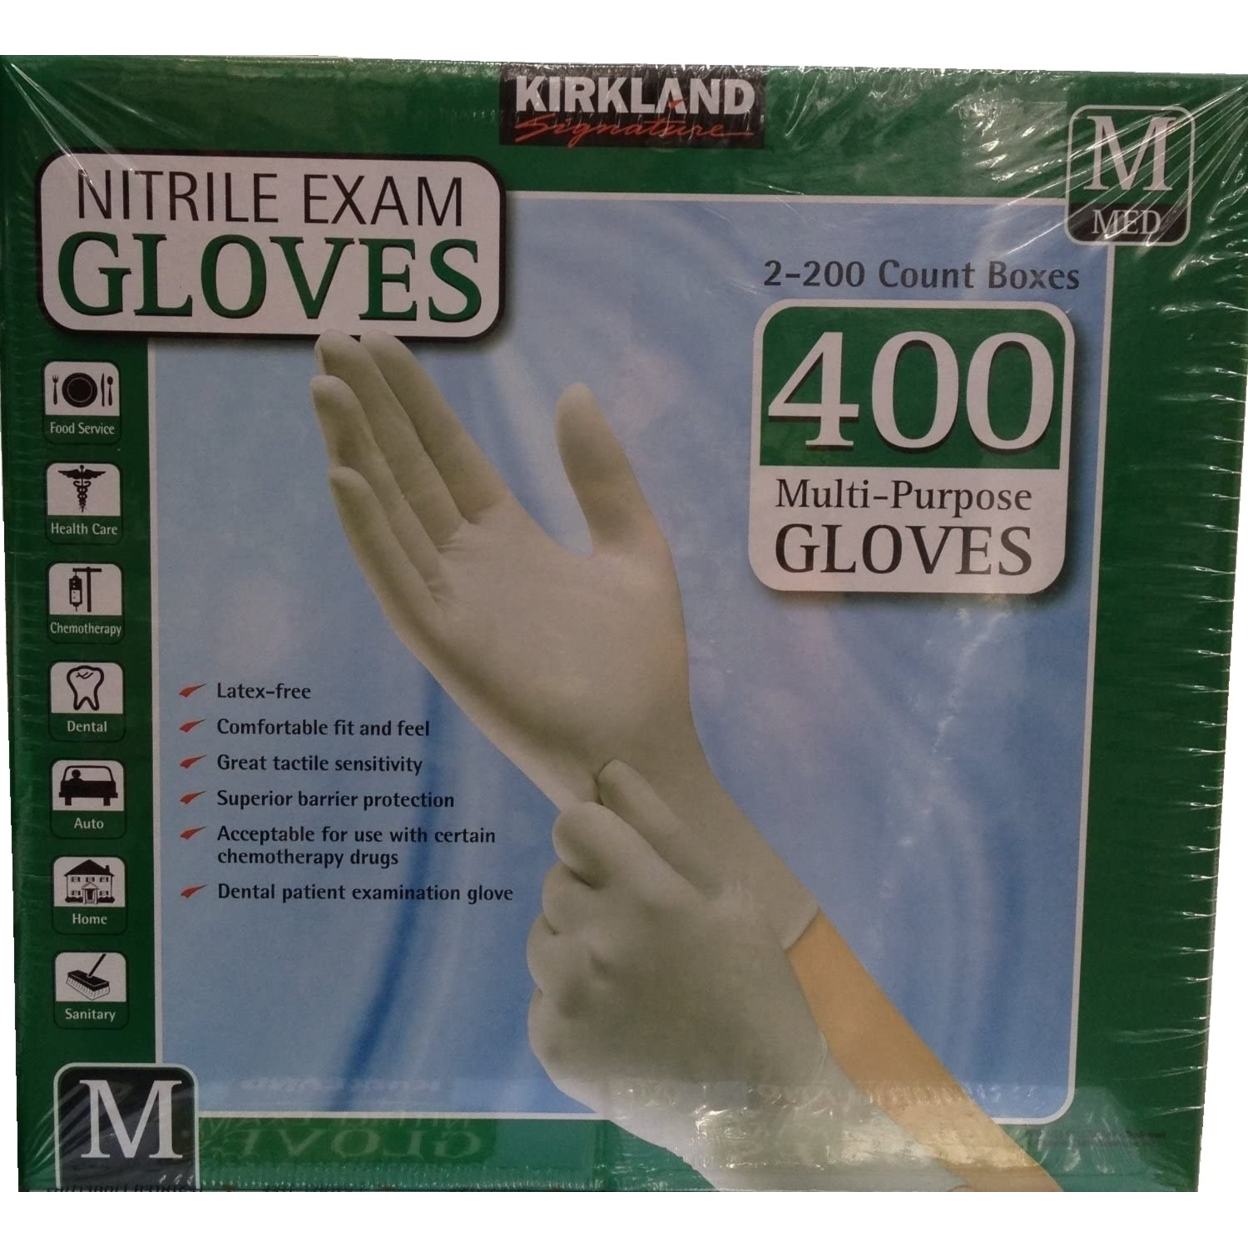 Kirkland Signature Nitrile Exam Gloves (Medium), 400 Count